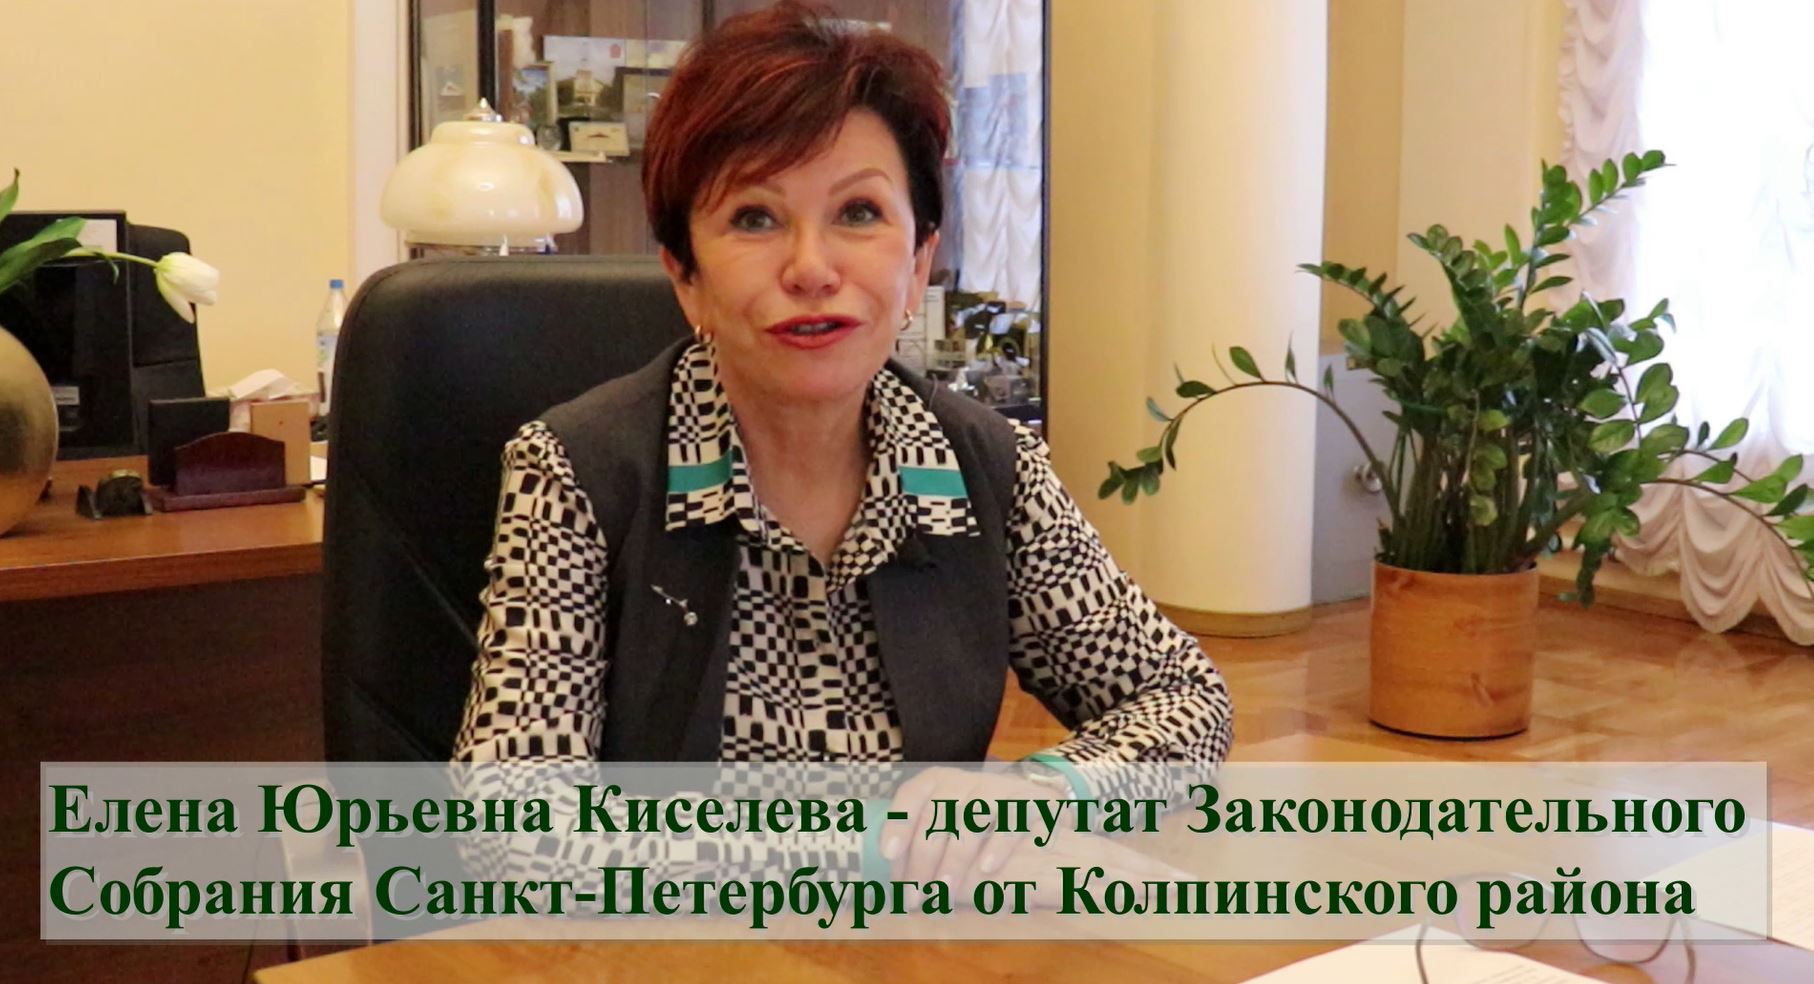 Поздравительные слова к выпускникам от депутата Законодательного Собрания Санкт-Петербурга Елены Юрьевны Киселевой